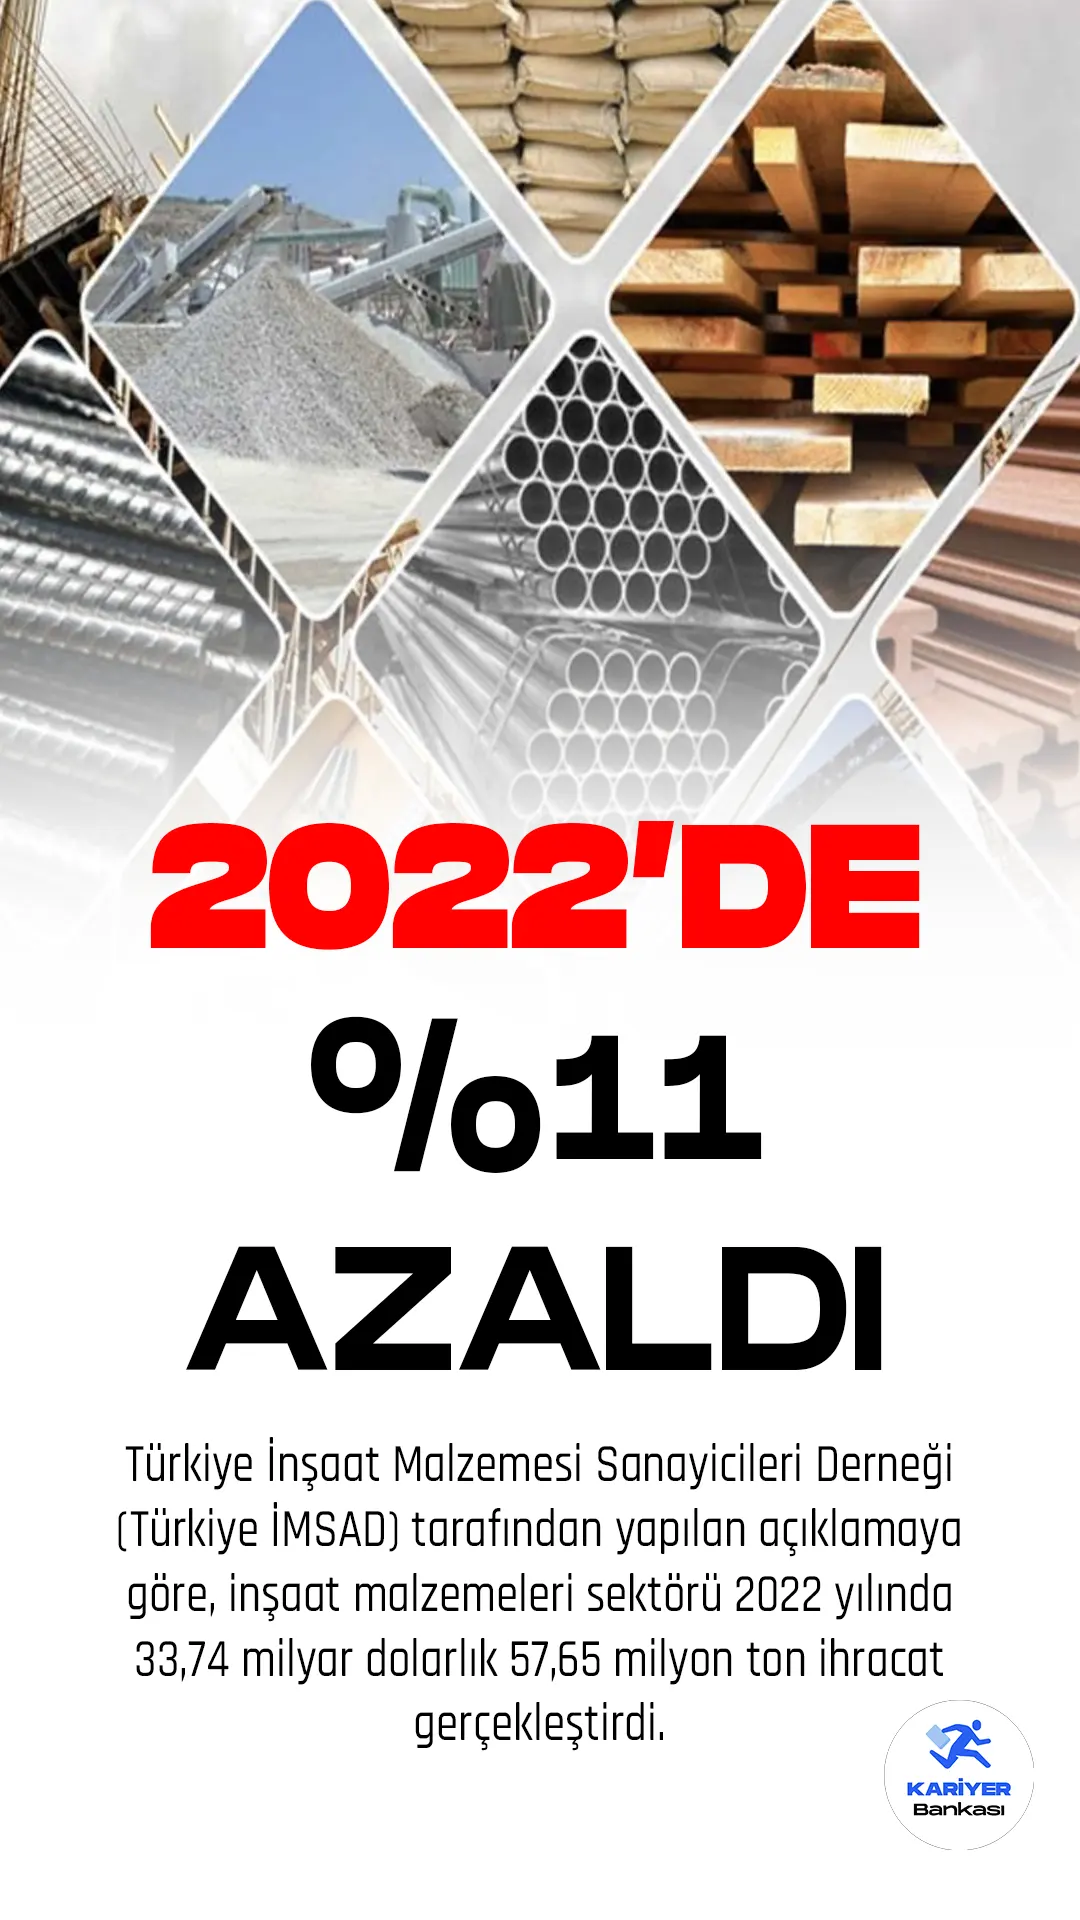 Türkiye İnşaat Malzemesi Sanayicileri Derneği (Türkiye İMSAD) tarafından yapılan açıklamaya göre, inşaat malzemeleri sektörü 2022 yılında 33,74 milyar dolarlık 57,65 milyon ton ihracat gerçekleştirdi. Bu ihracat miktarı, bir önceki yıla kıyasla yüzde 11'lik düşüşe işaret ediyor.